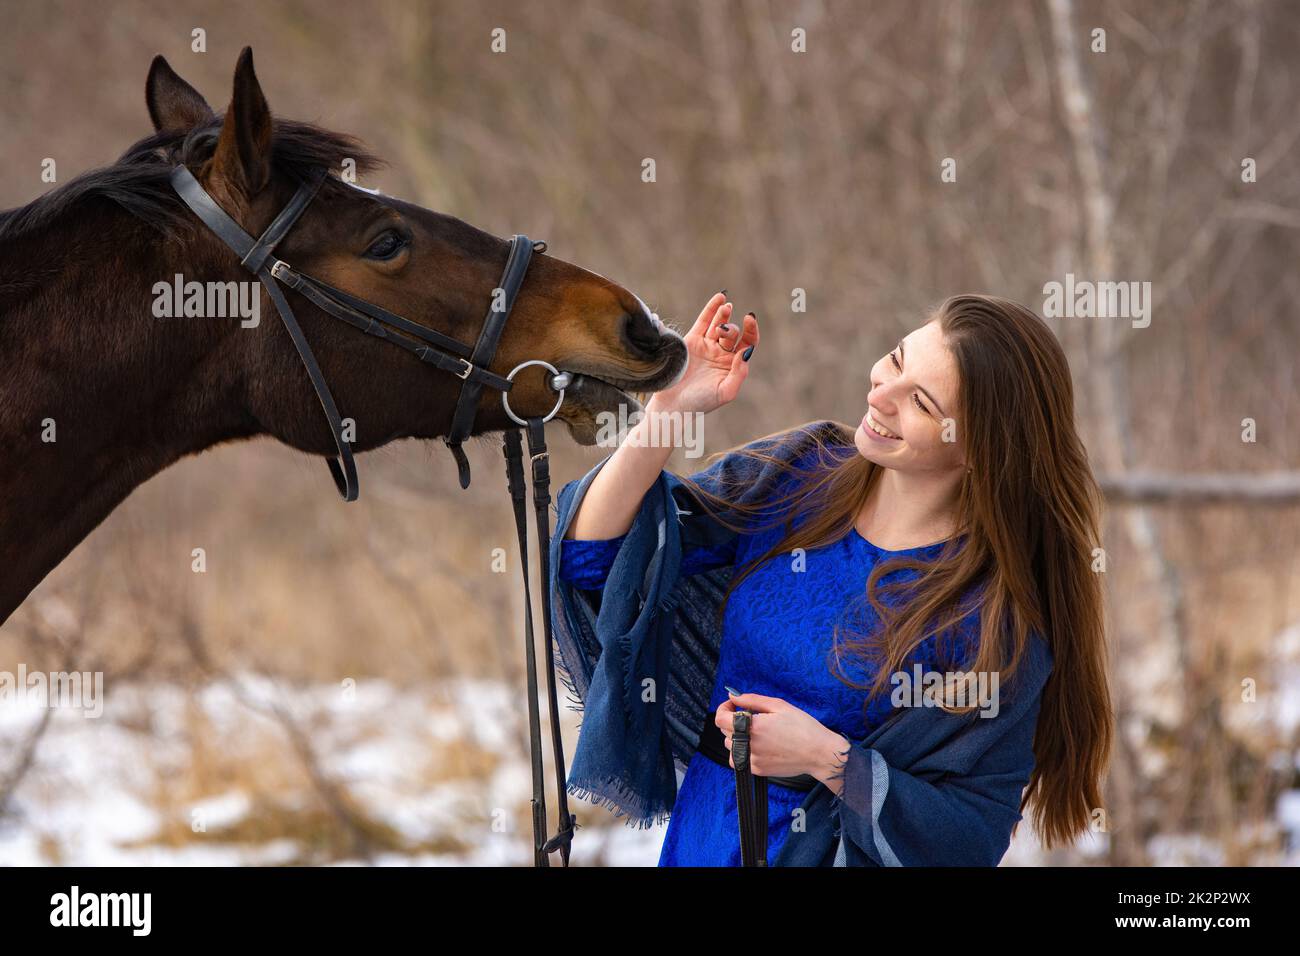 Glückliches Mädchen spielt mit Pferd, Pferd zeigt Zähne, Nahaufnahme Porträt Stockfoto